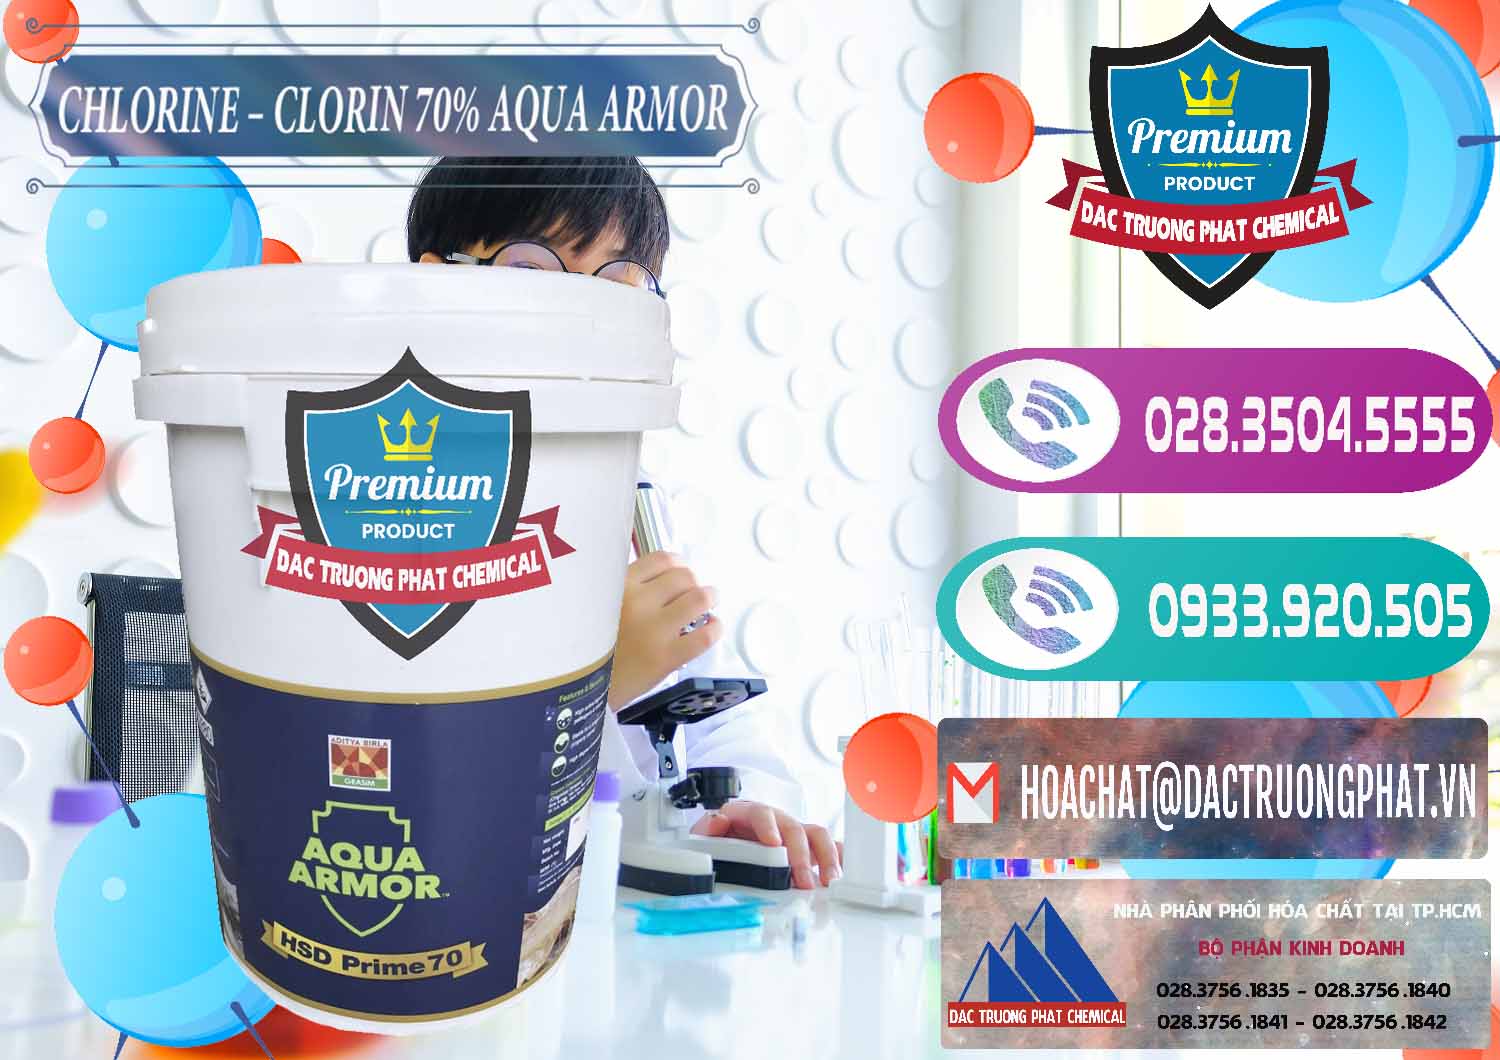 Công ty kinh doanh & bán Chlorine – Clorin 70% Aqua Armor Aditya Birla Grasim Ấn Độ India - 0241 - Chuyên cung cấp ( kinh doanh ) hóa chất tại TP.HCM - hoachatxulynuoc.com